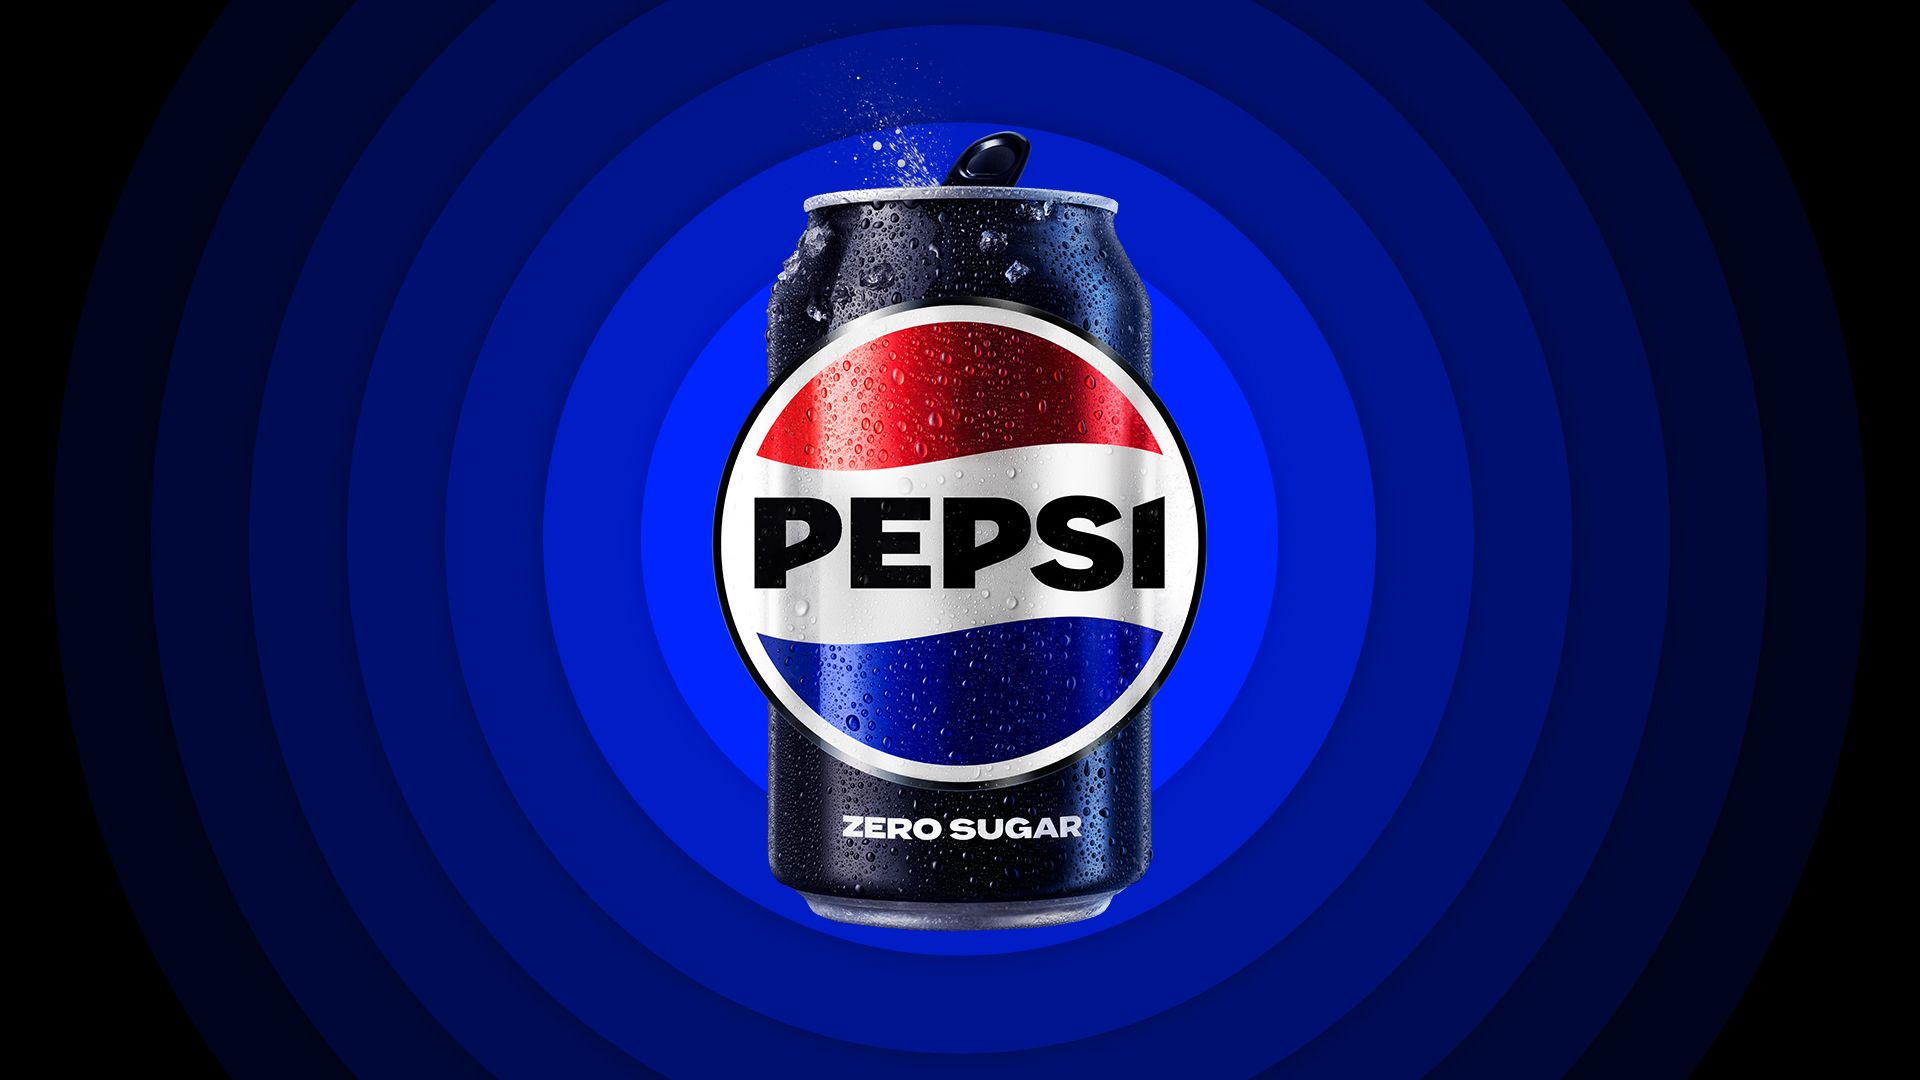 Rebranding Pepsi 2024. Lata zero açúcar é preta e está presente em toda identidade visual, reforçando ter menor volume de açúcar em todos os produtos. Imagem: Divulgação da marca Pepsi.